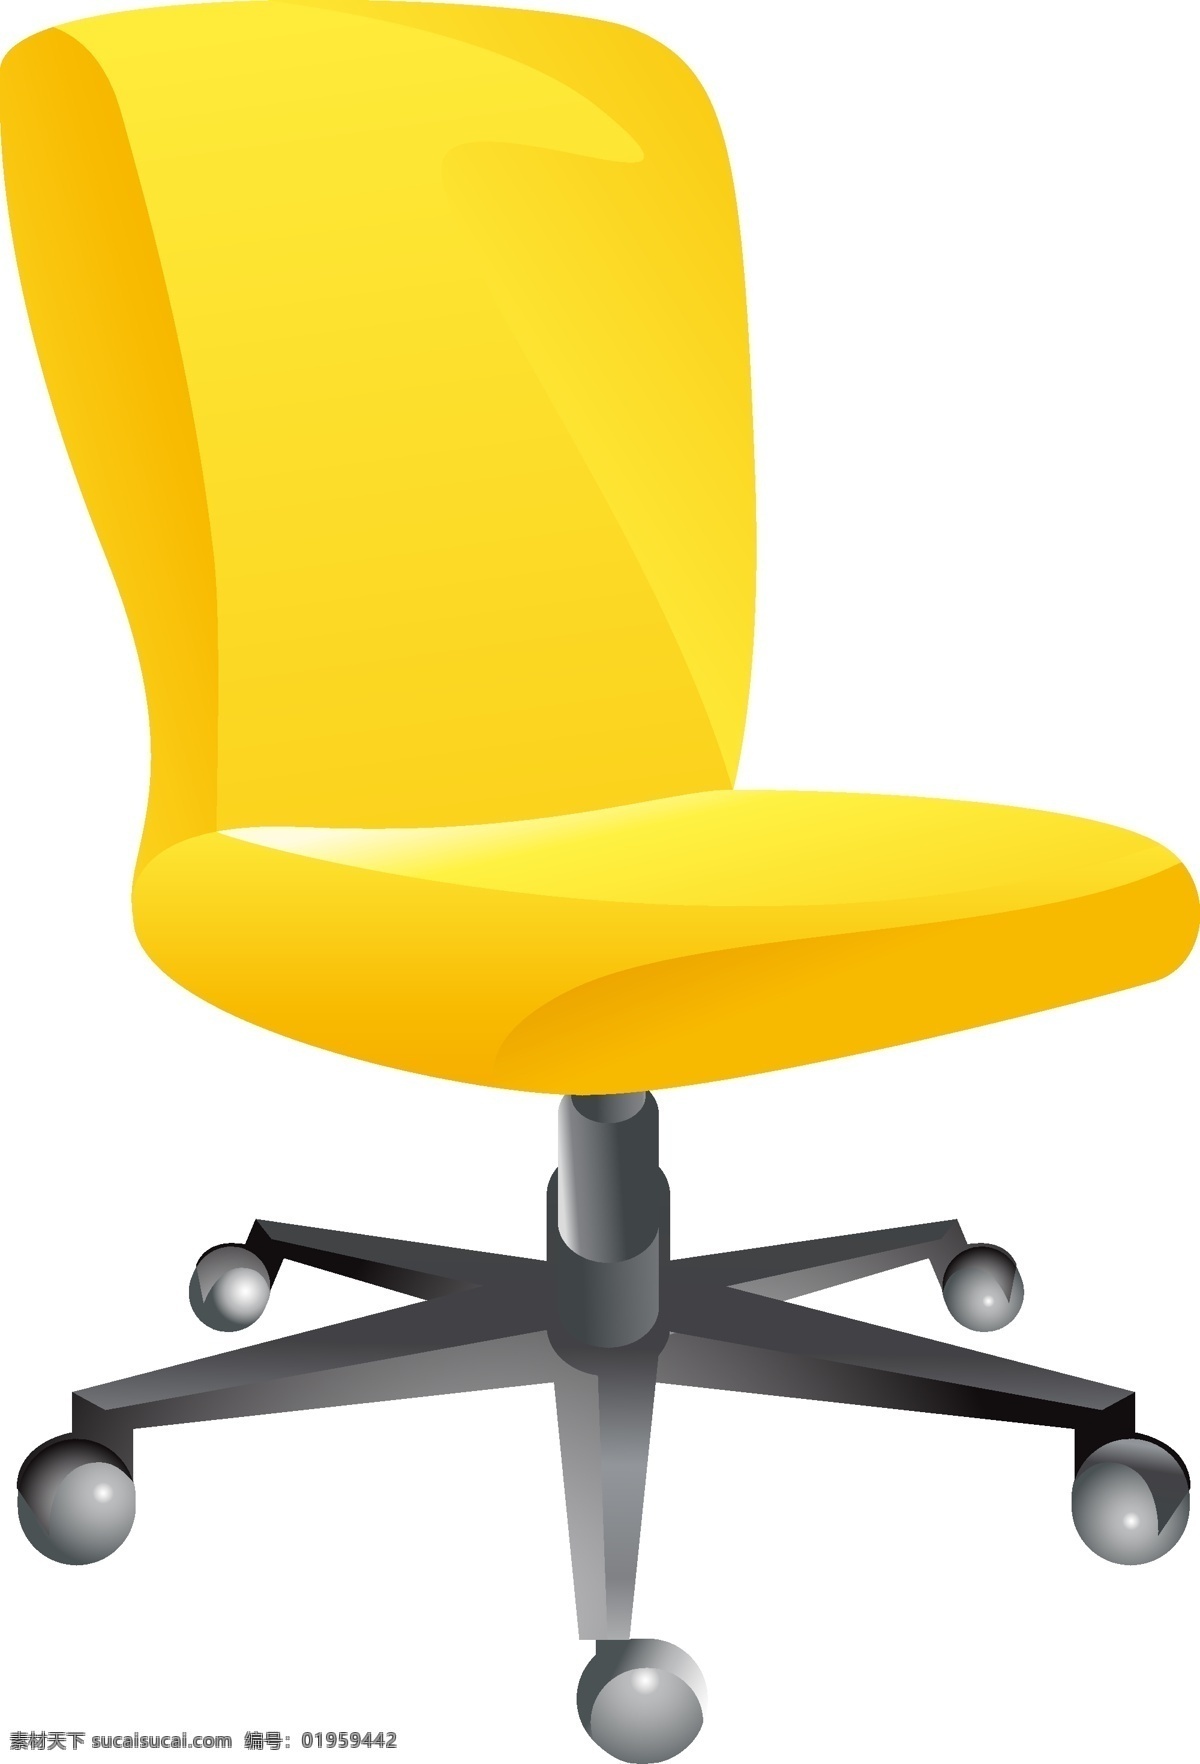 矢量 黄色 椅子 元素 家具 ai元素 免扣元素